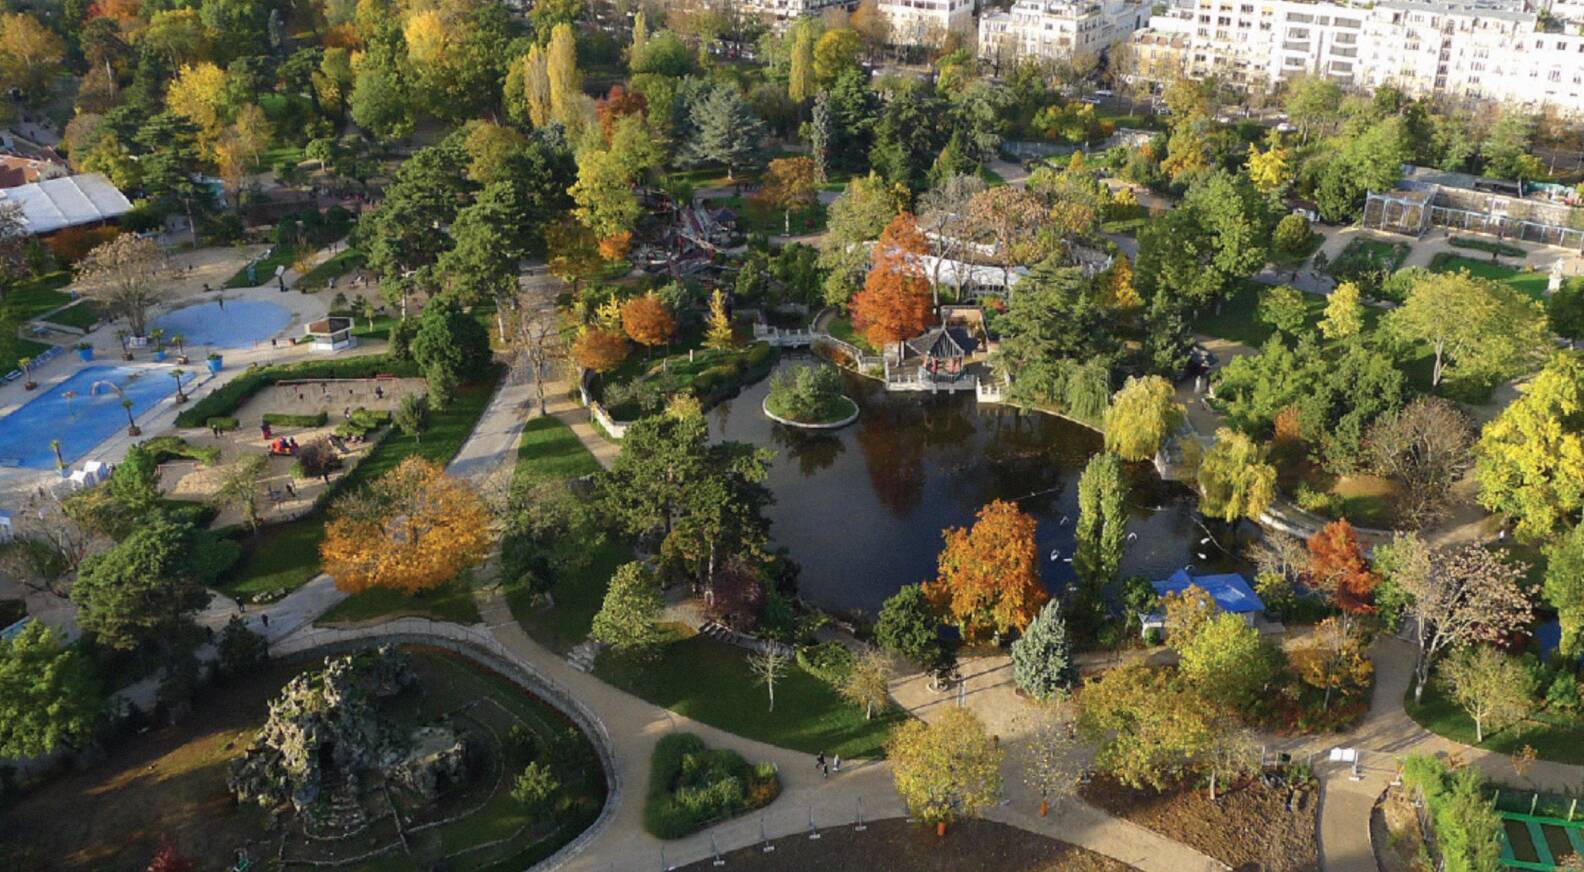 Jardin D Acclimatation Paris Élégant Jardin D Acclimatation S A Makeover for Spring 2018 Lvmh